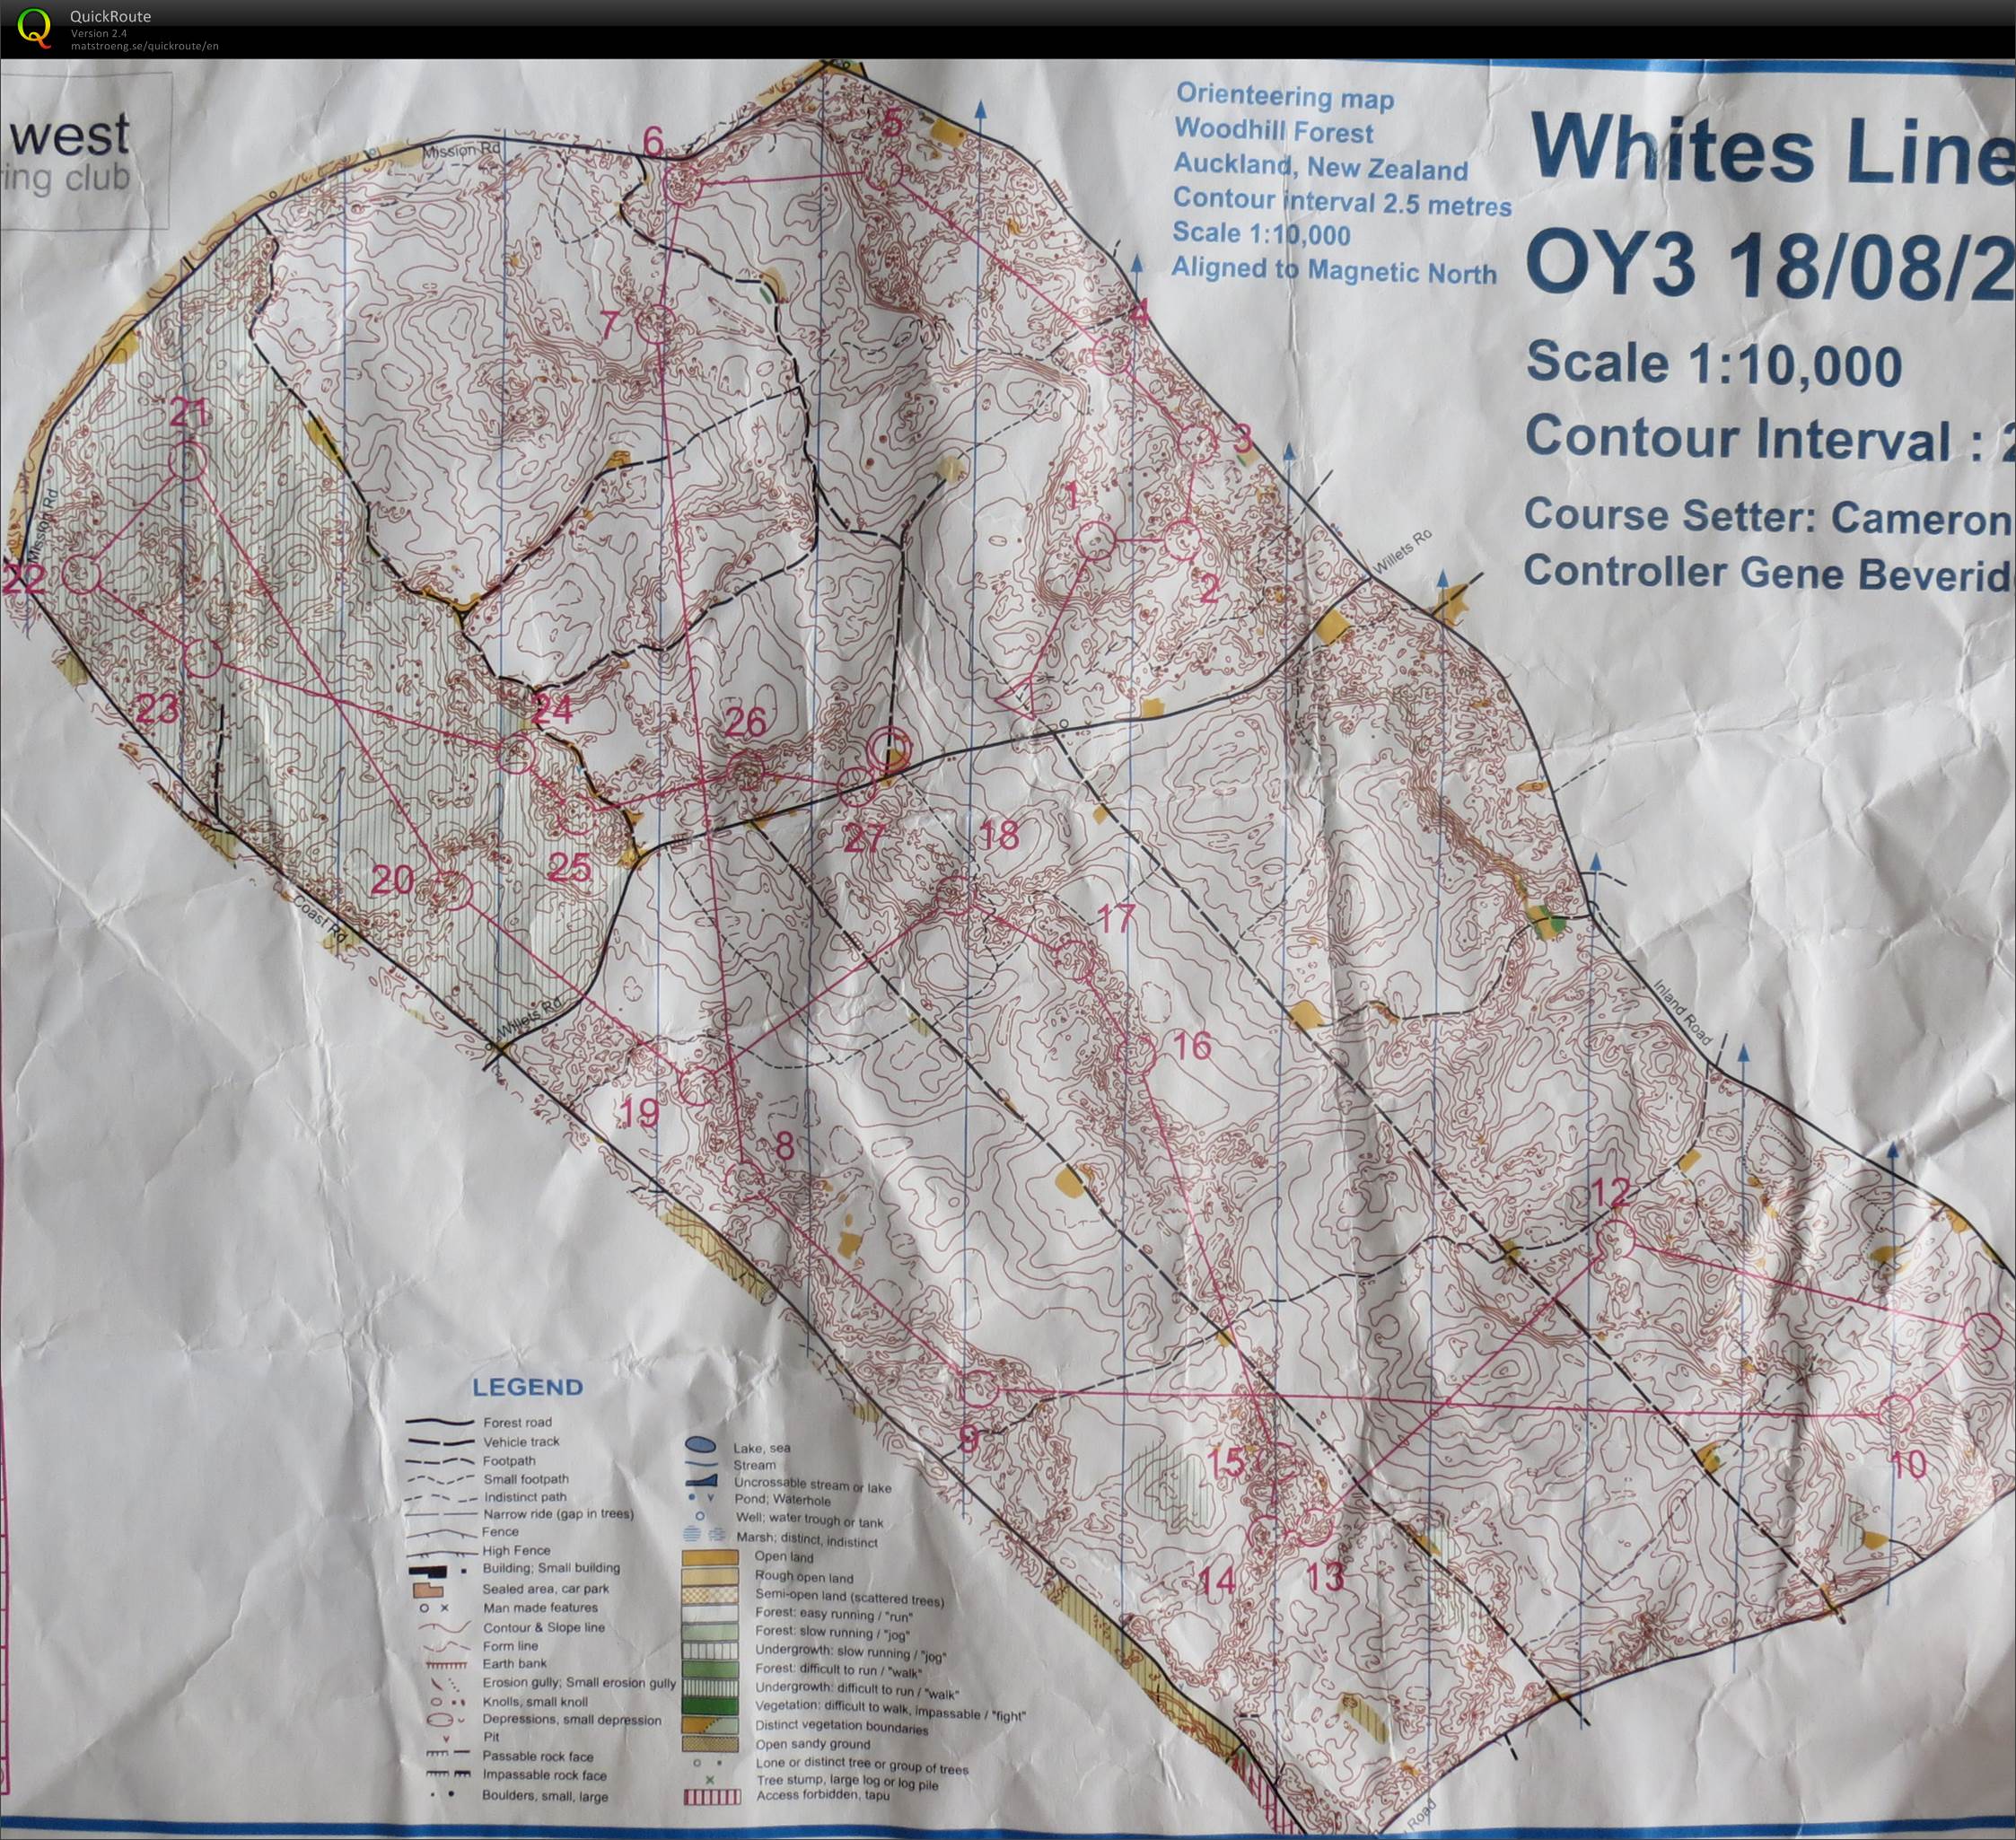 OY3 2013 Whites Line (17-08-2013)